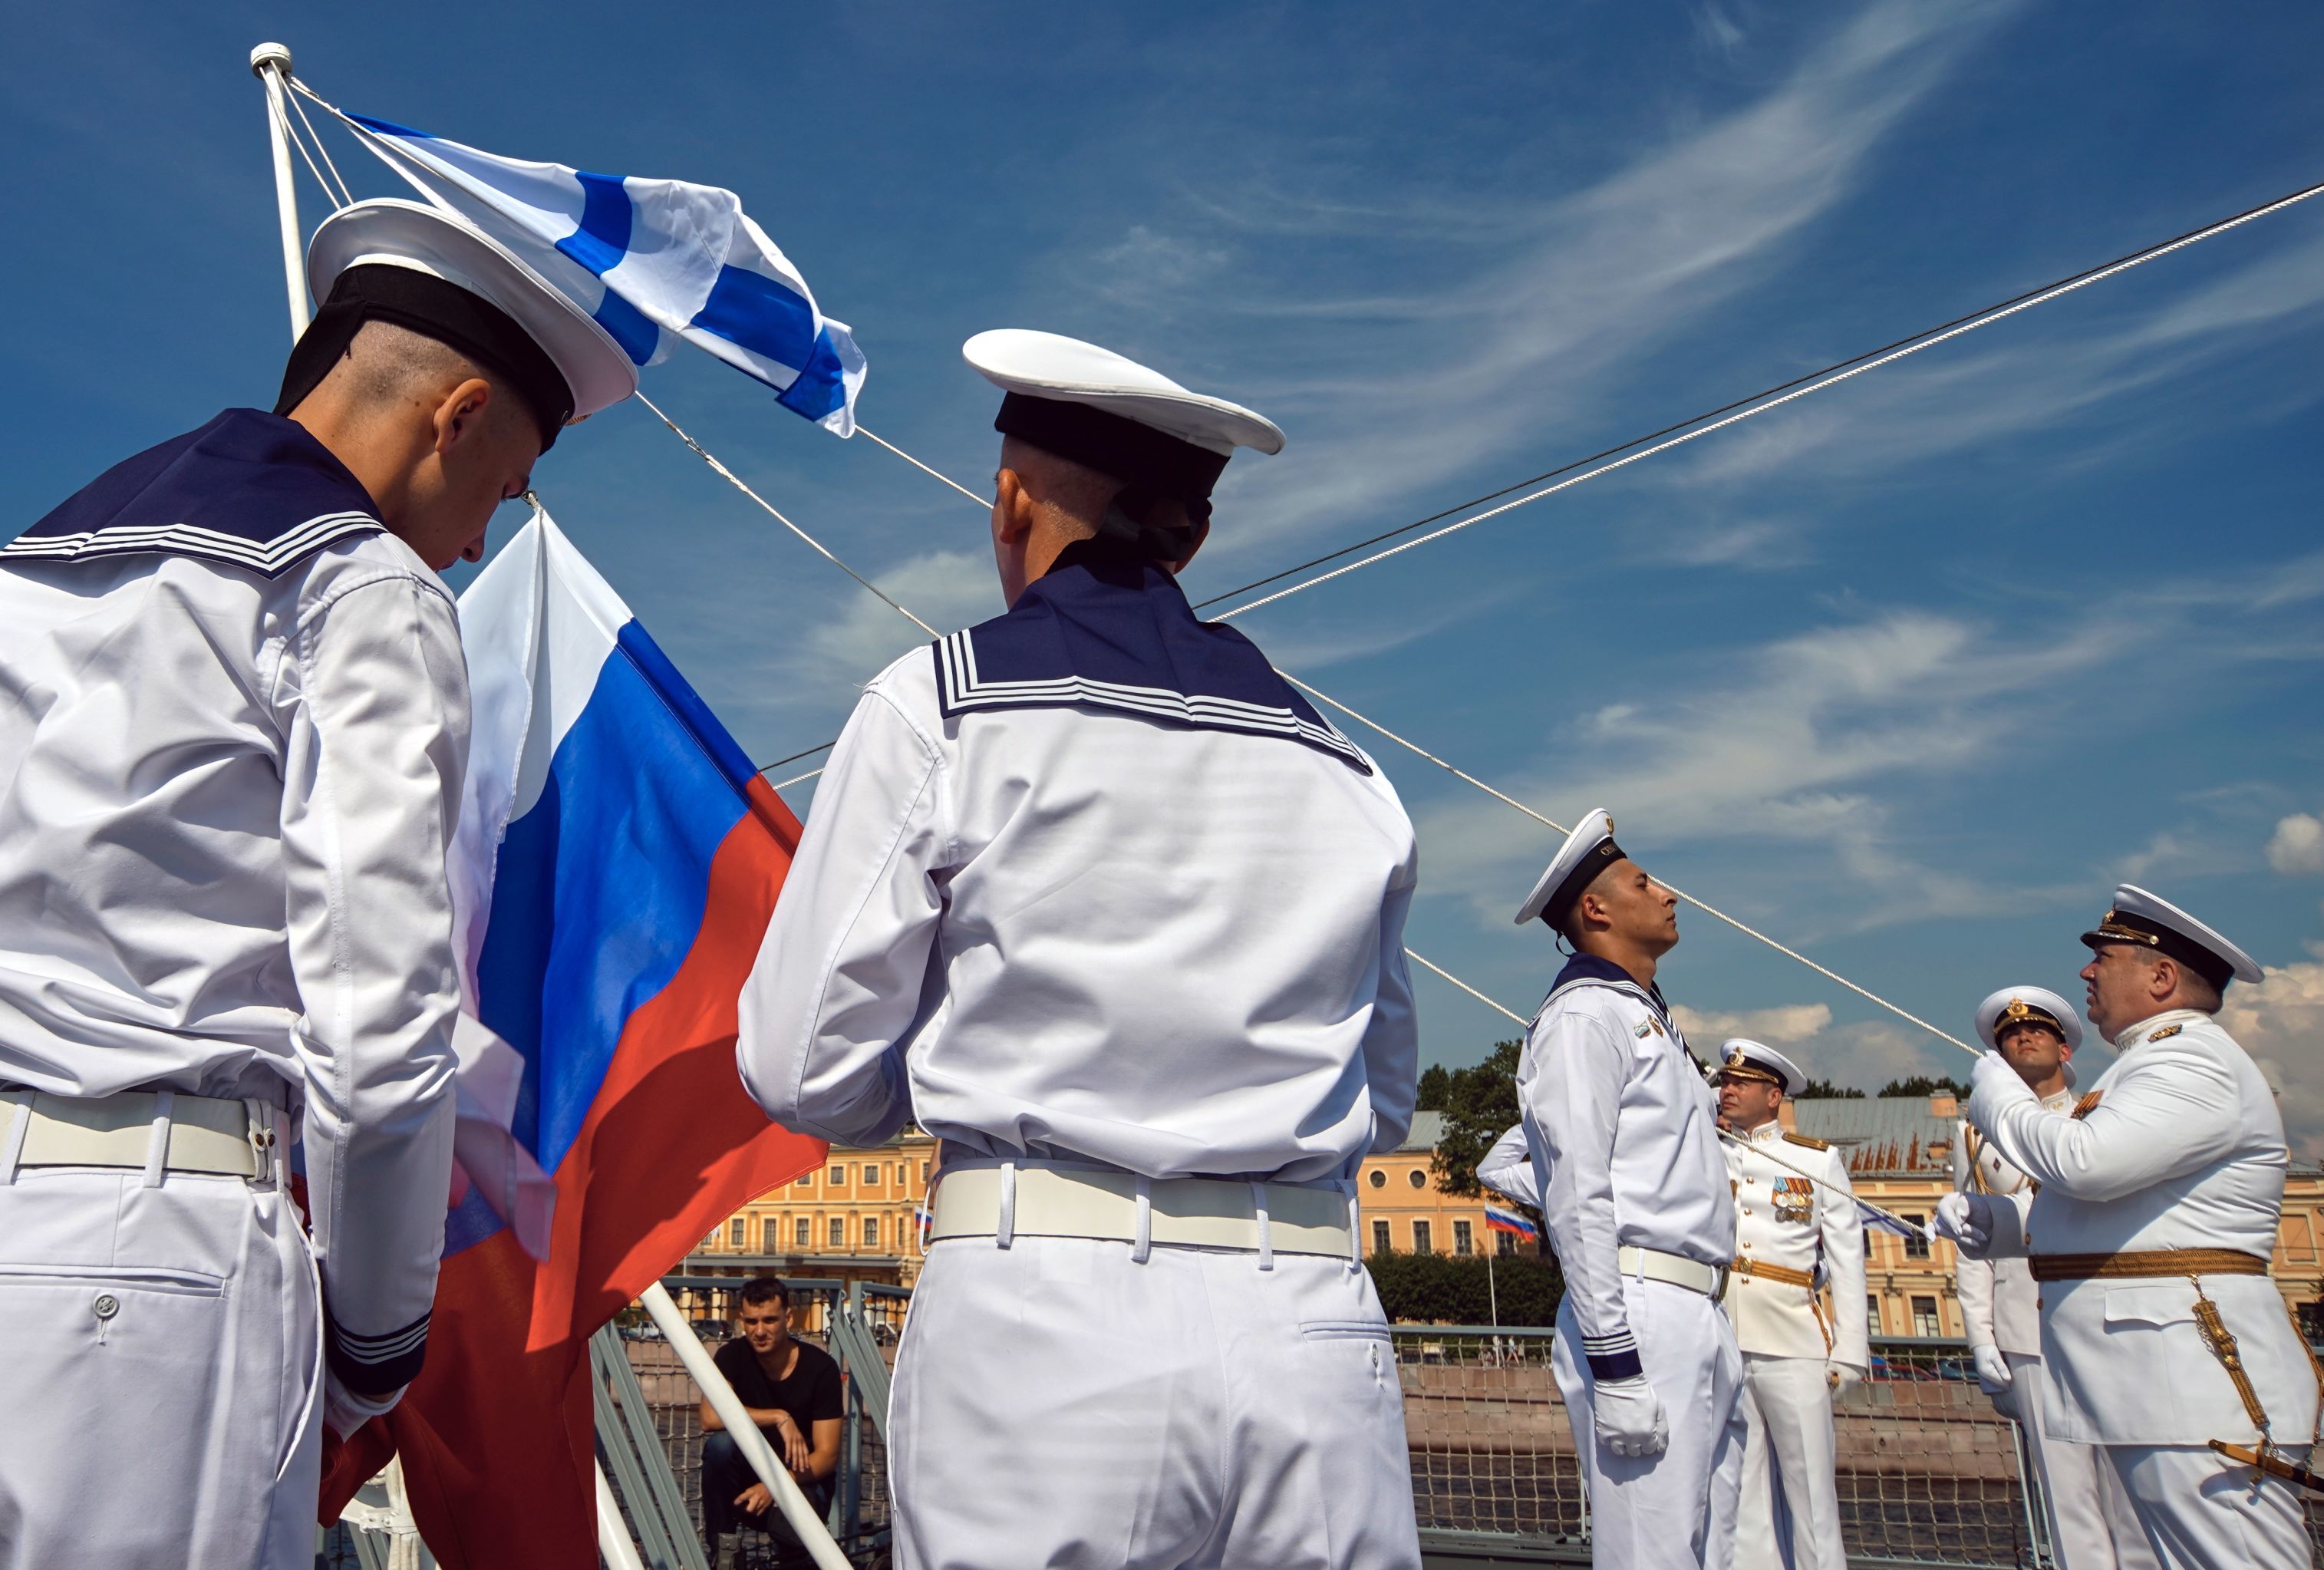 Экипаж фрегата "Адмирал флота Касатонов" на церемонии подъема Андреевского флага